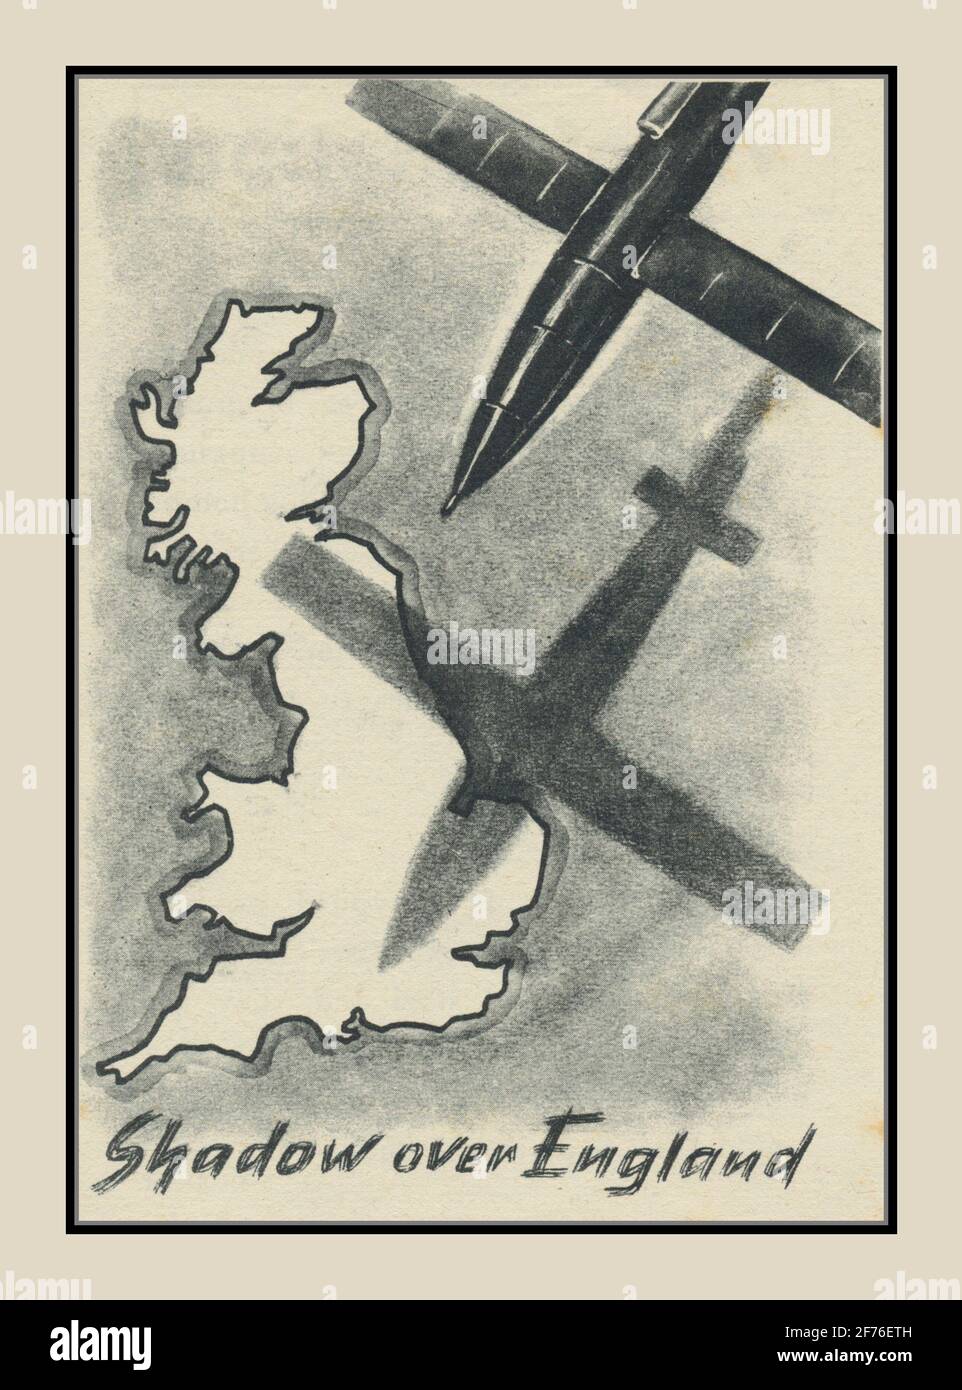 Il volantino nazista della seconda Guerra Mondiale "Shadow over England" è caduto sull'Inghilterra Avviso di arma terrore Buzz Bomb Doodlebug VII razzi indiscriminati Bombardamento terroristico della Germania nazista 1940's seconda guerra mondiale Foto Stock